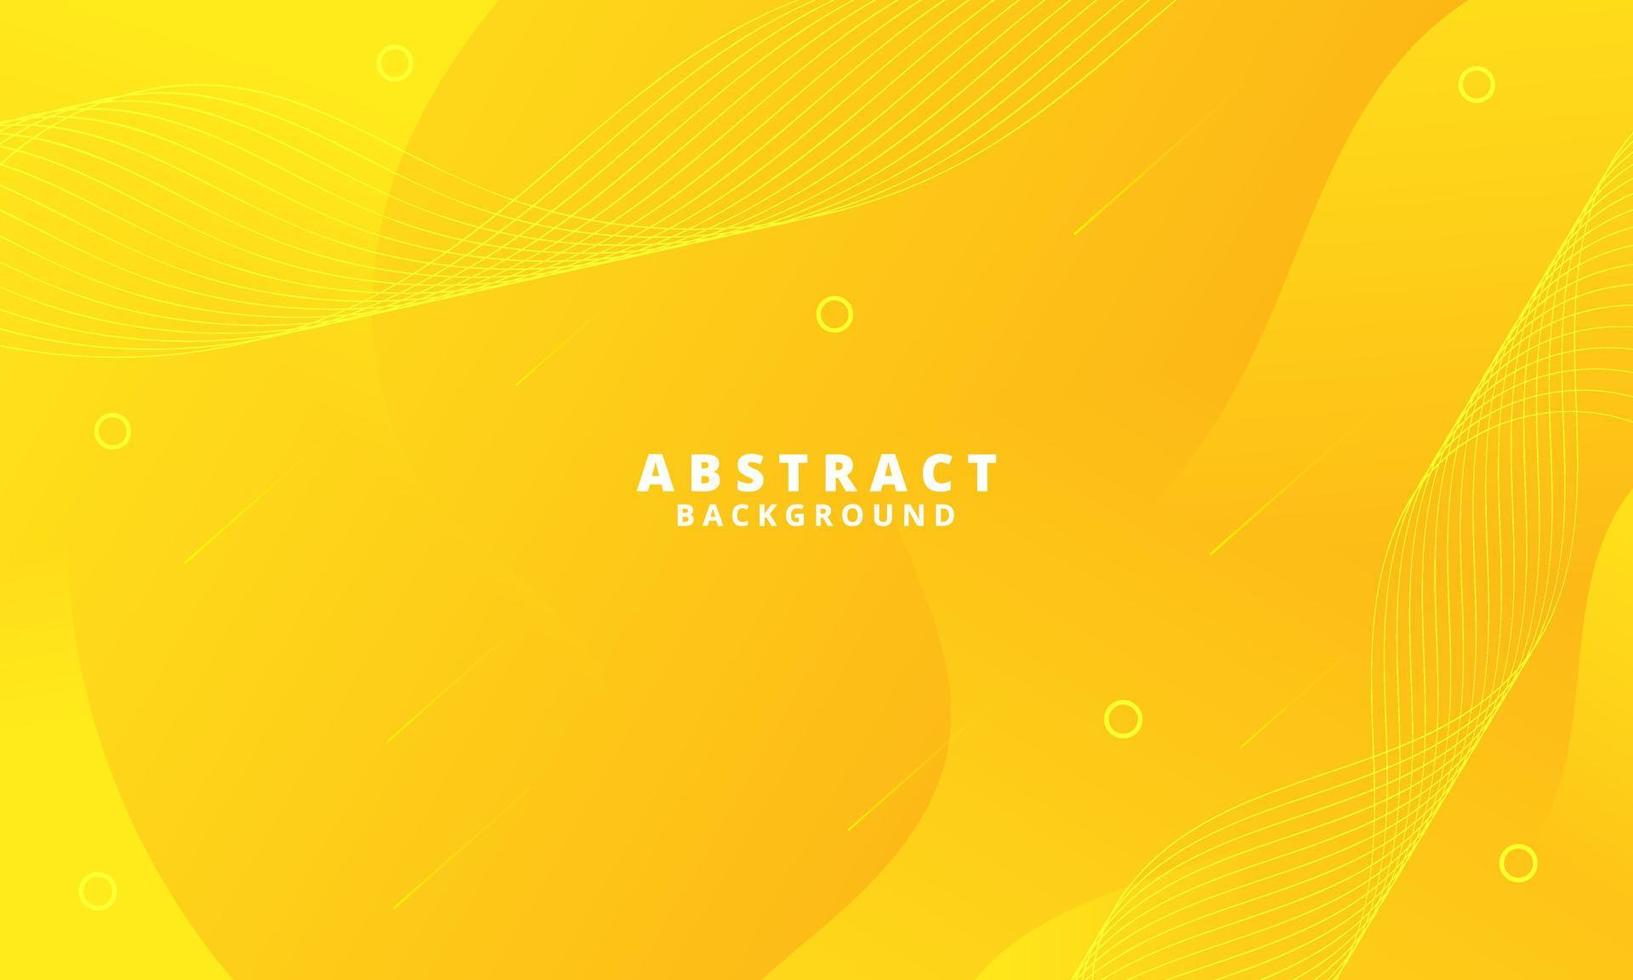 abstrakter gelber flüssiger Wellenhintergrund vektor